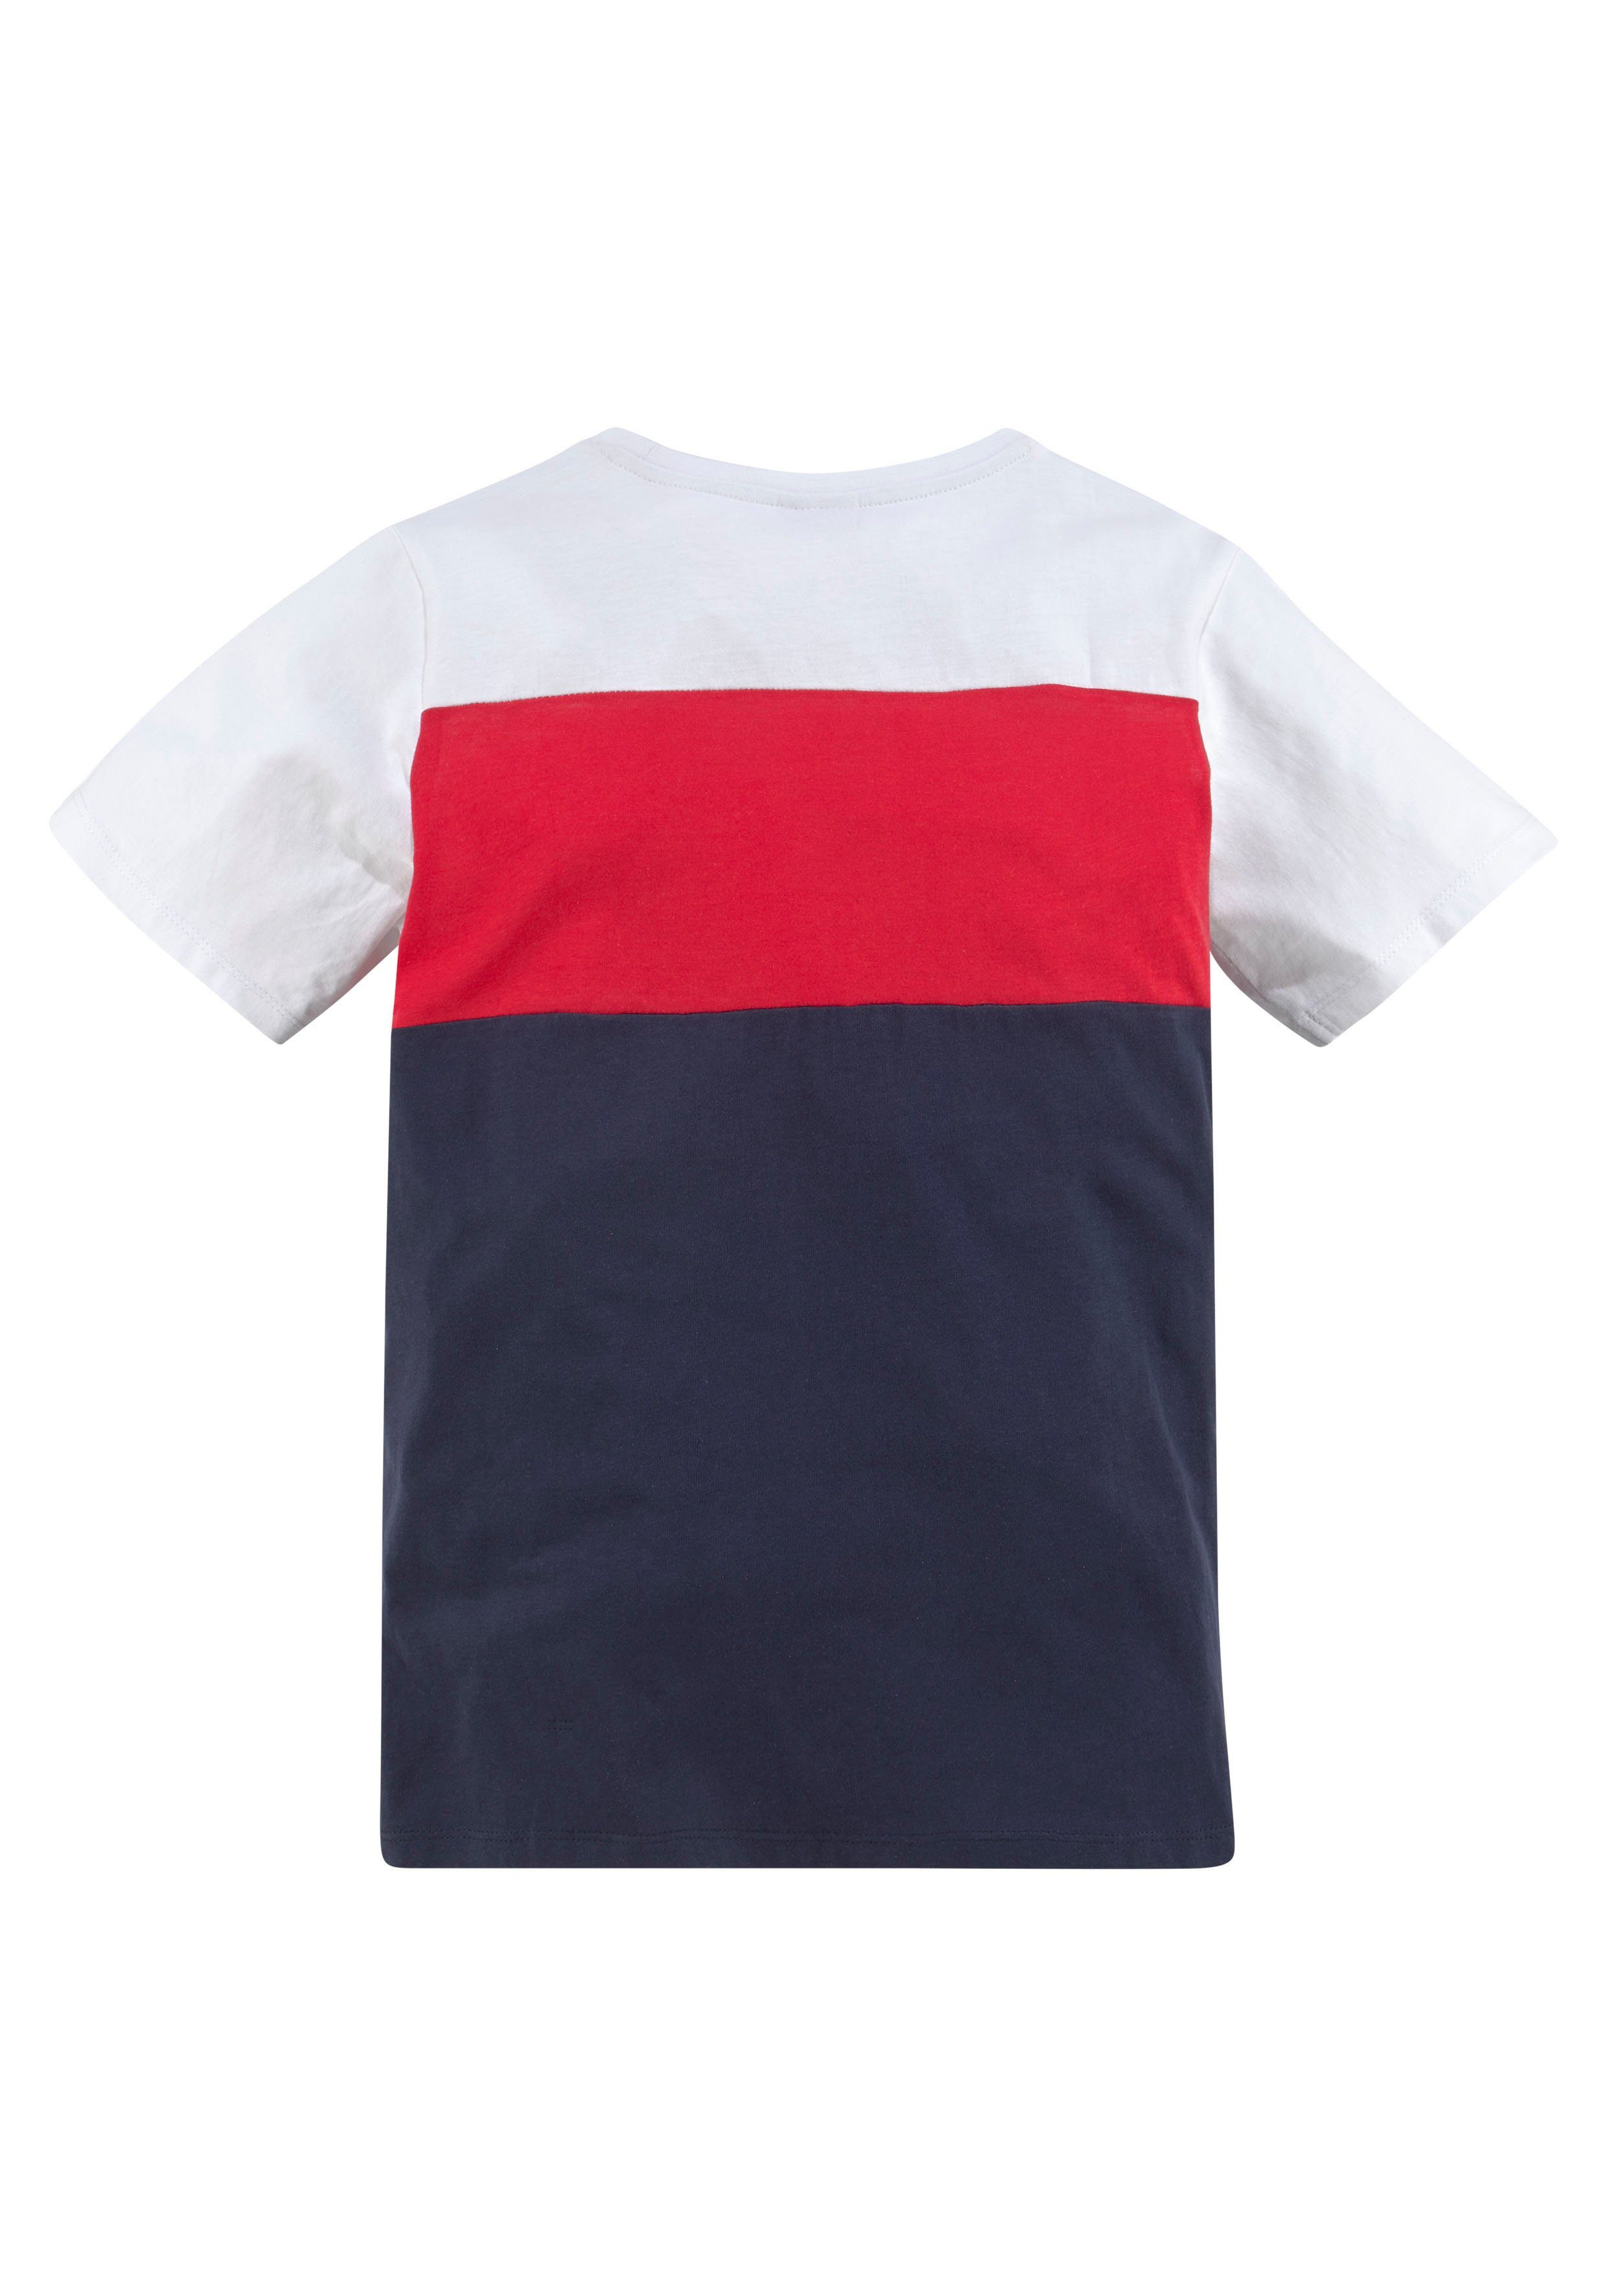 KangaROOS T-Shirt in Colorblockdesign